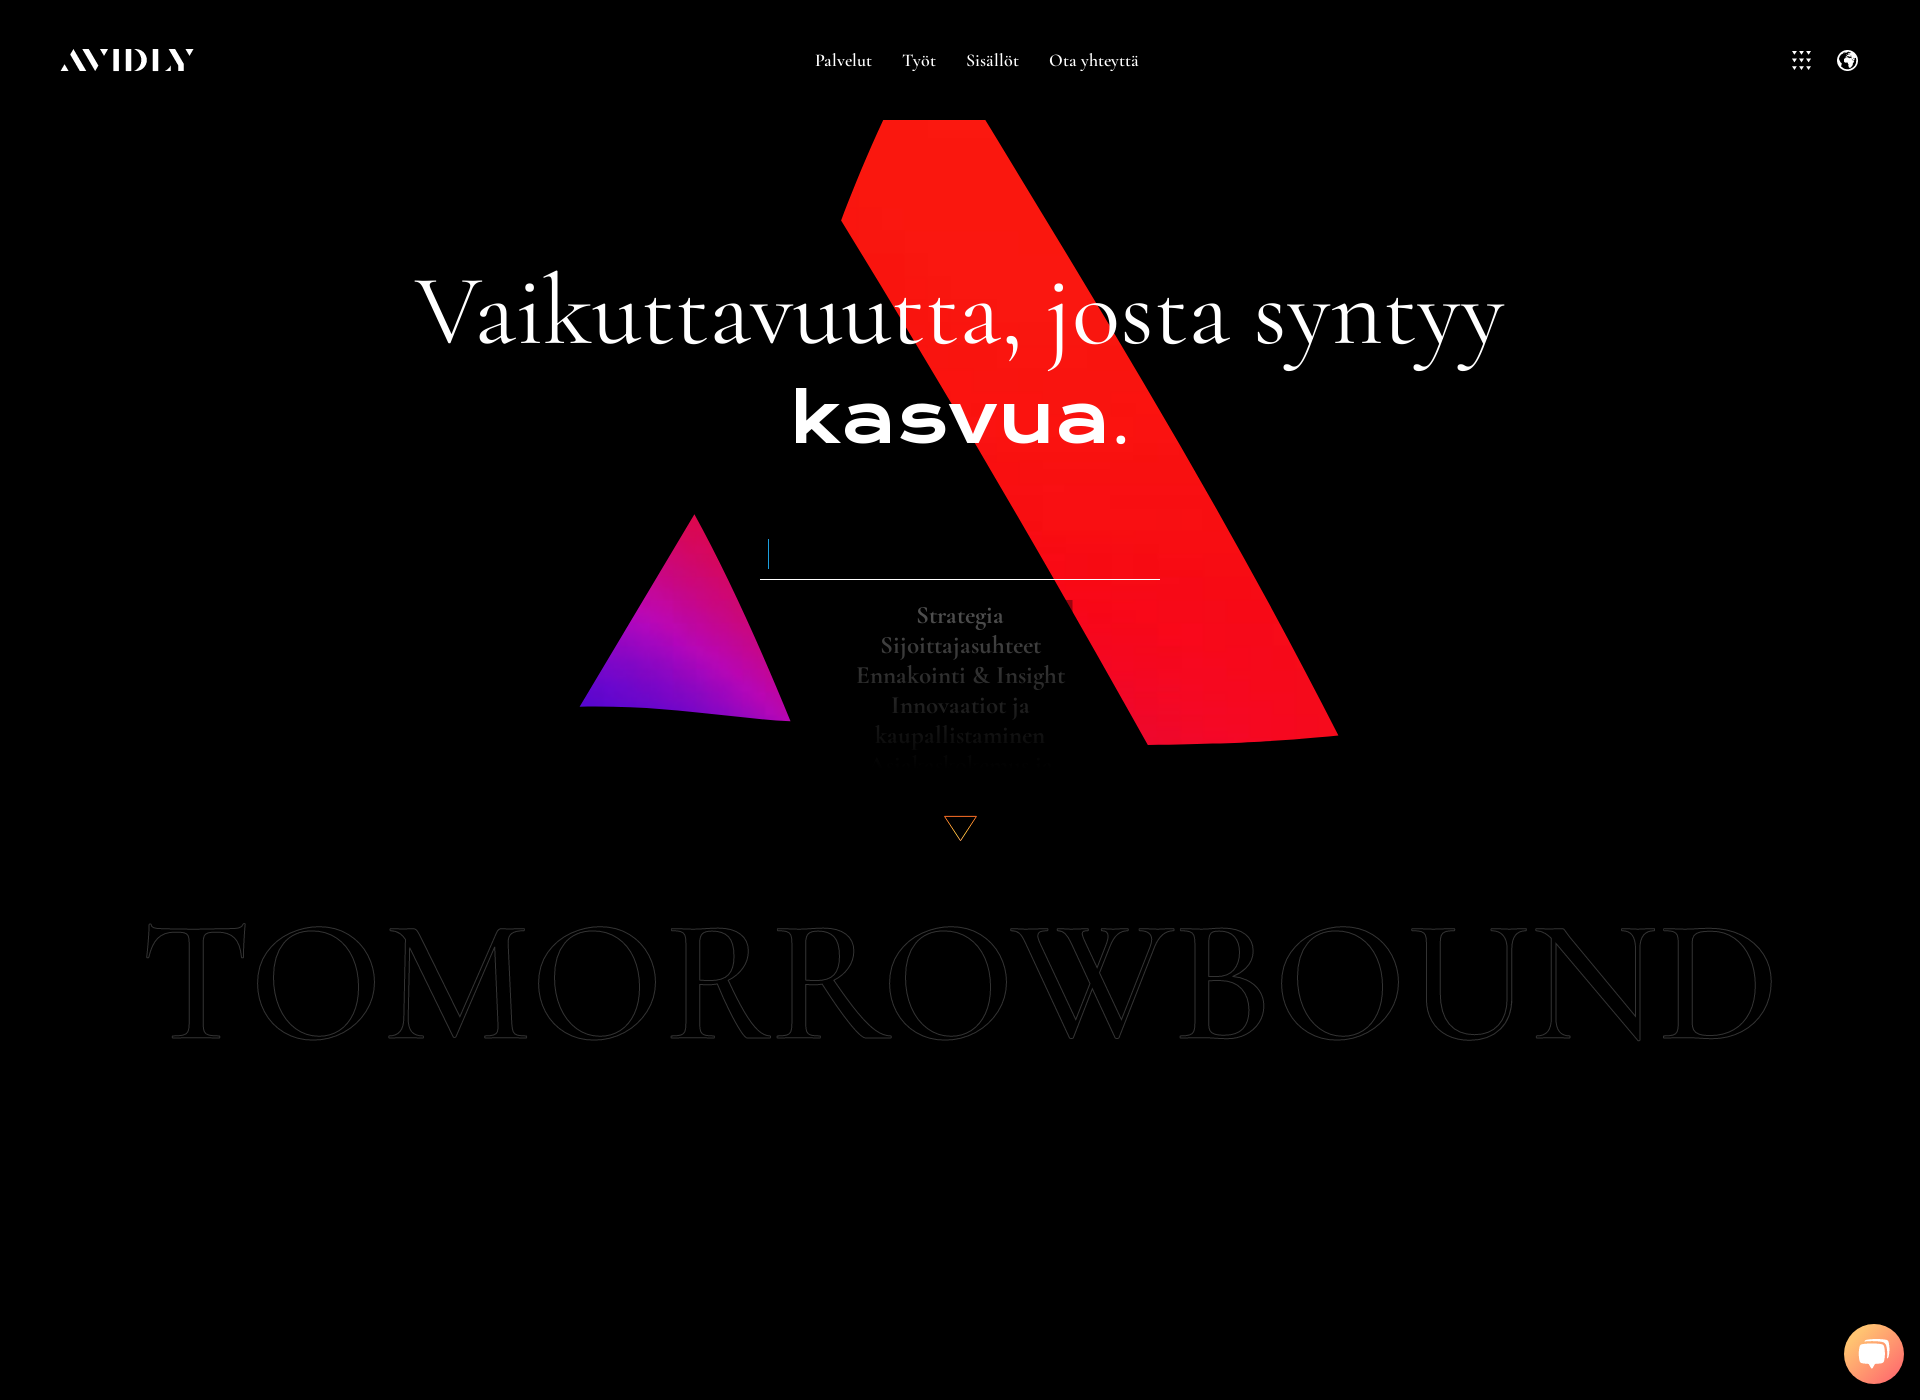 Skärmdump för tomorrowbound.fi